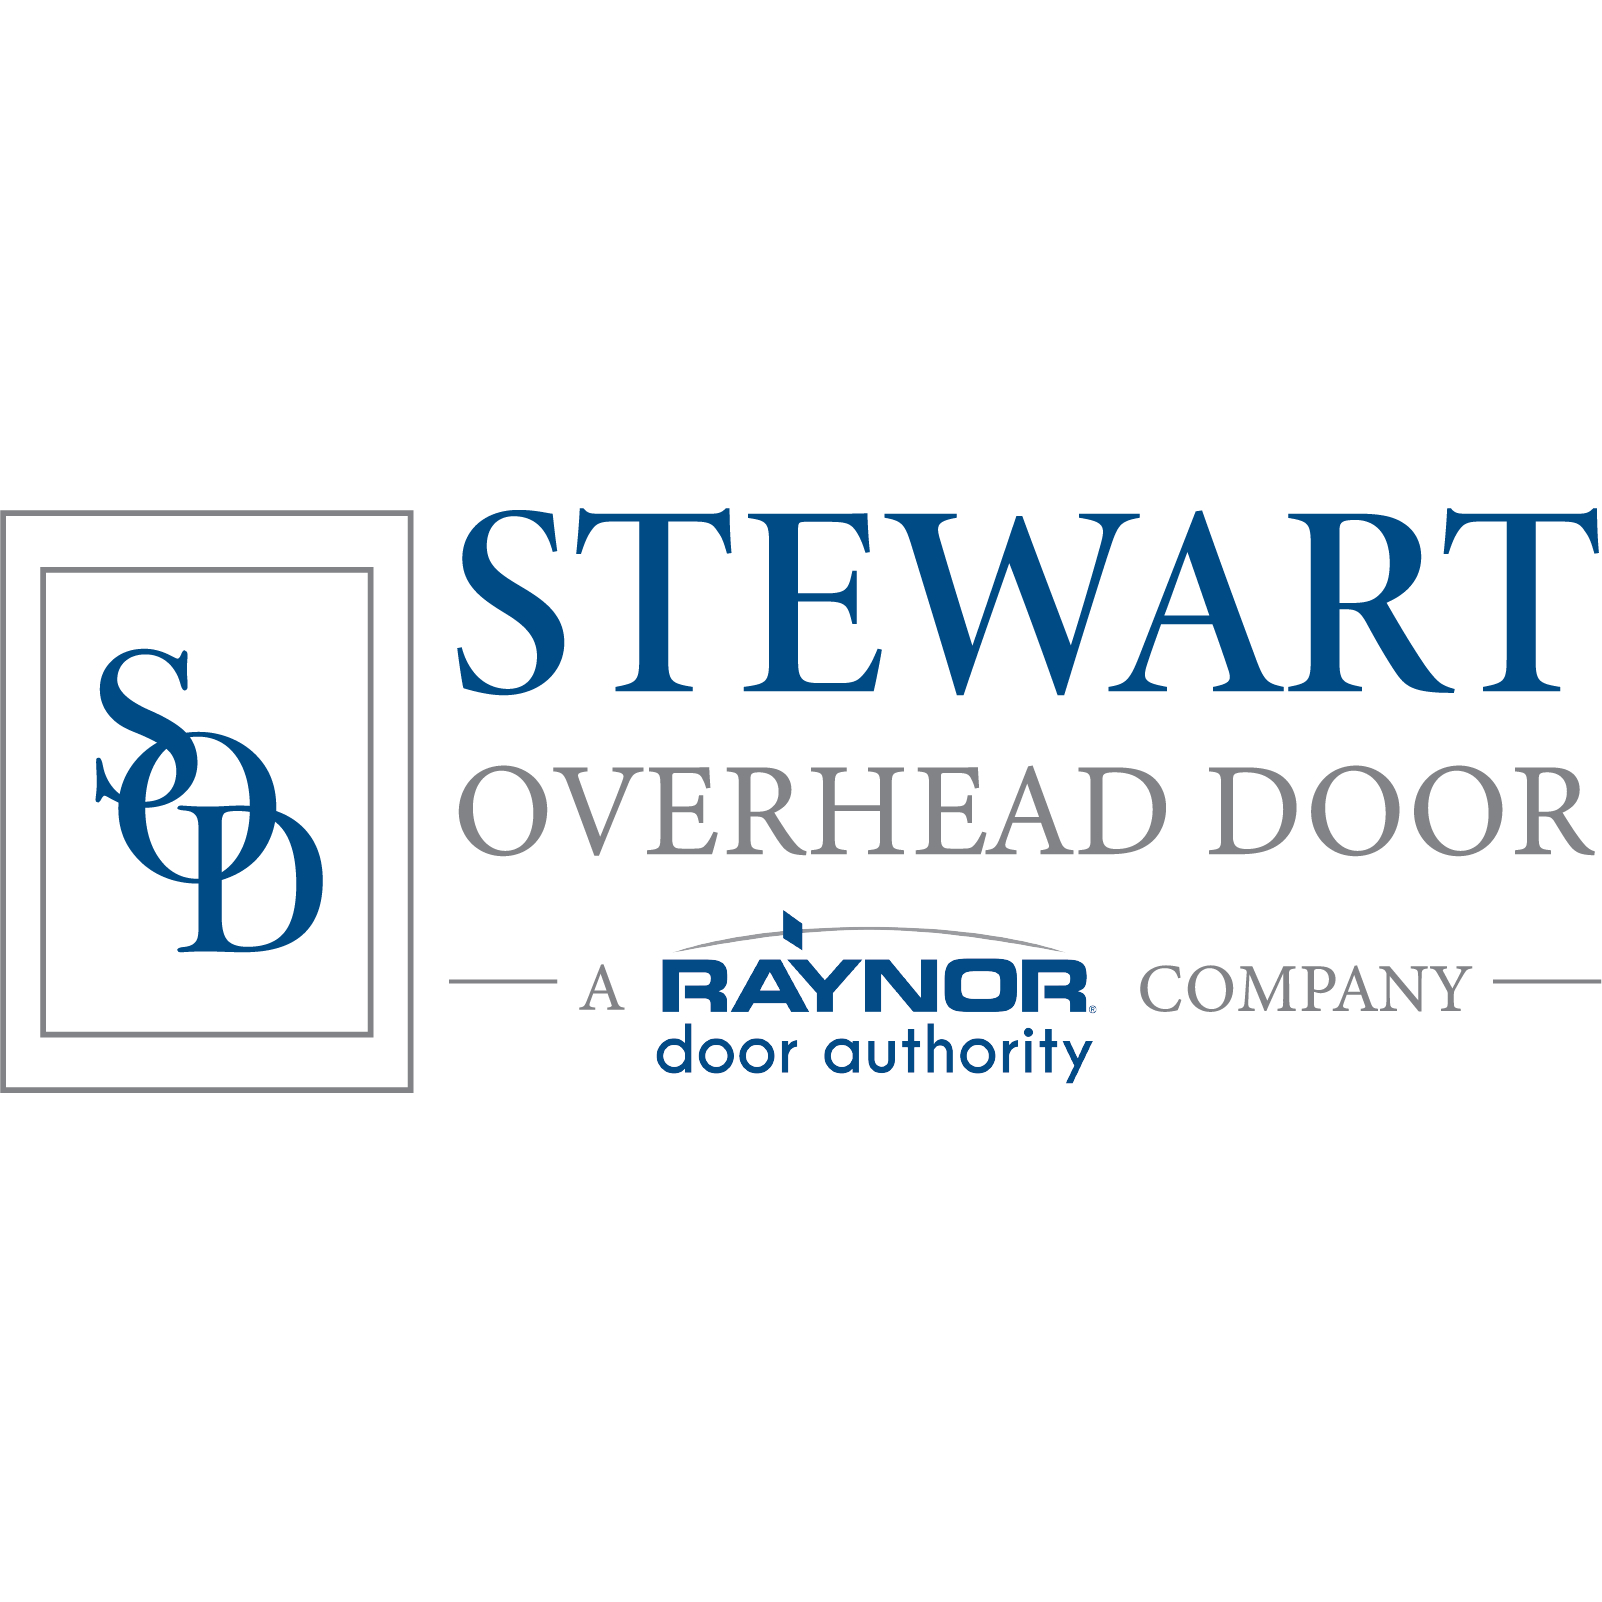 Stewart Overhead Door - Overhead & Garage Doors